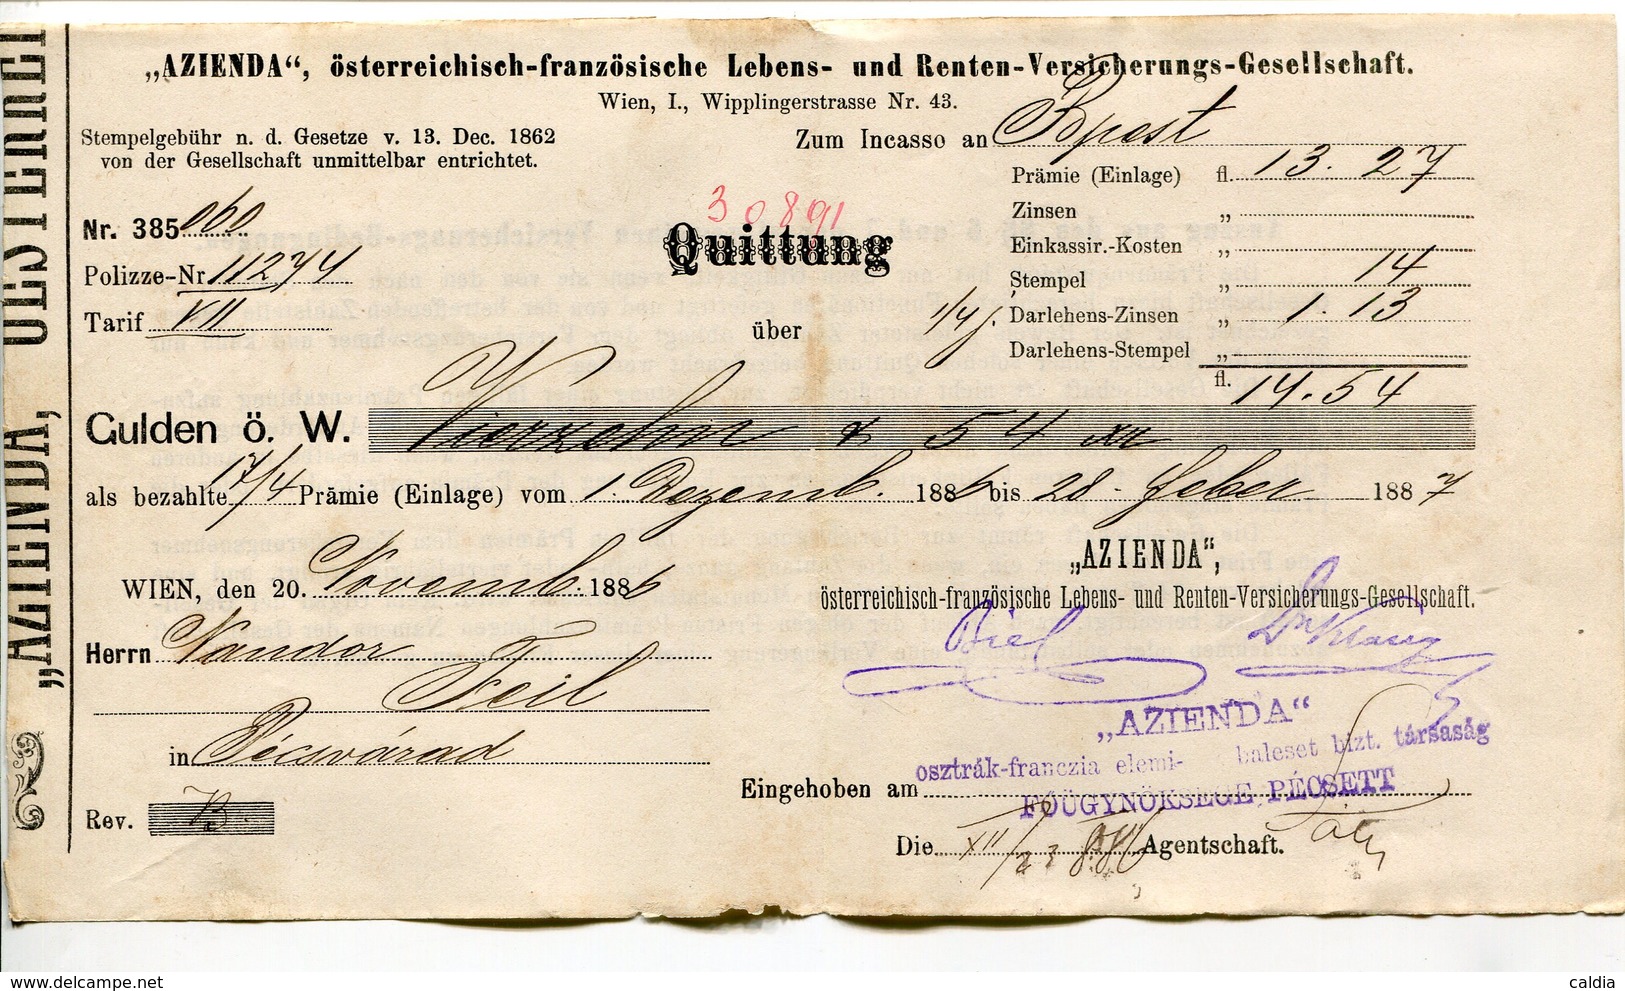 Autriche Austria Österreich Ticket QUITTUNG " AZIENDA " Austria - France Society 1887 # 2 - Autriche